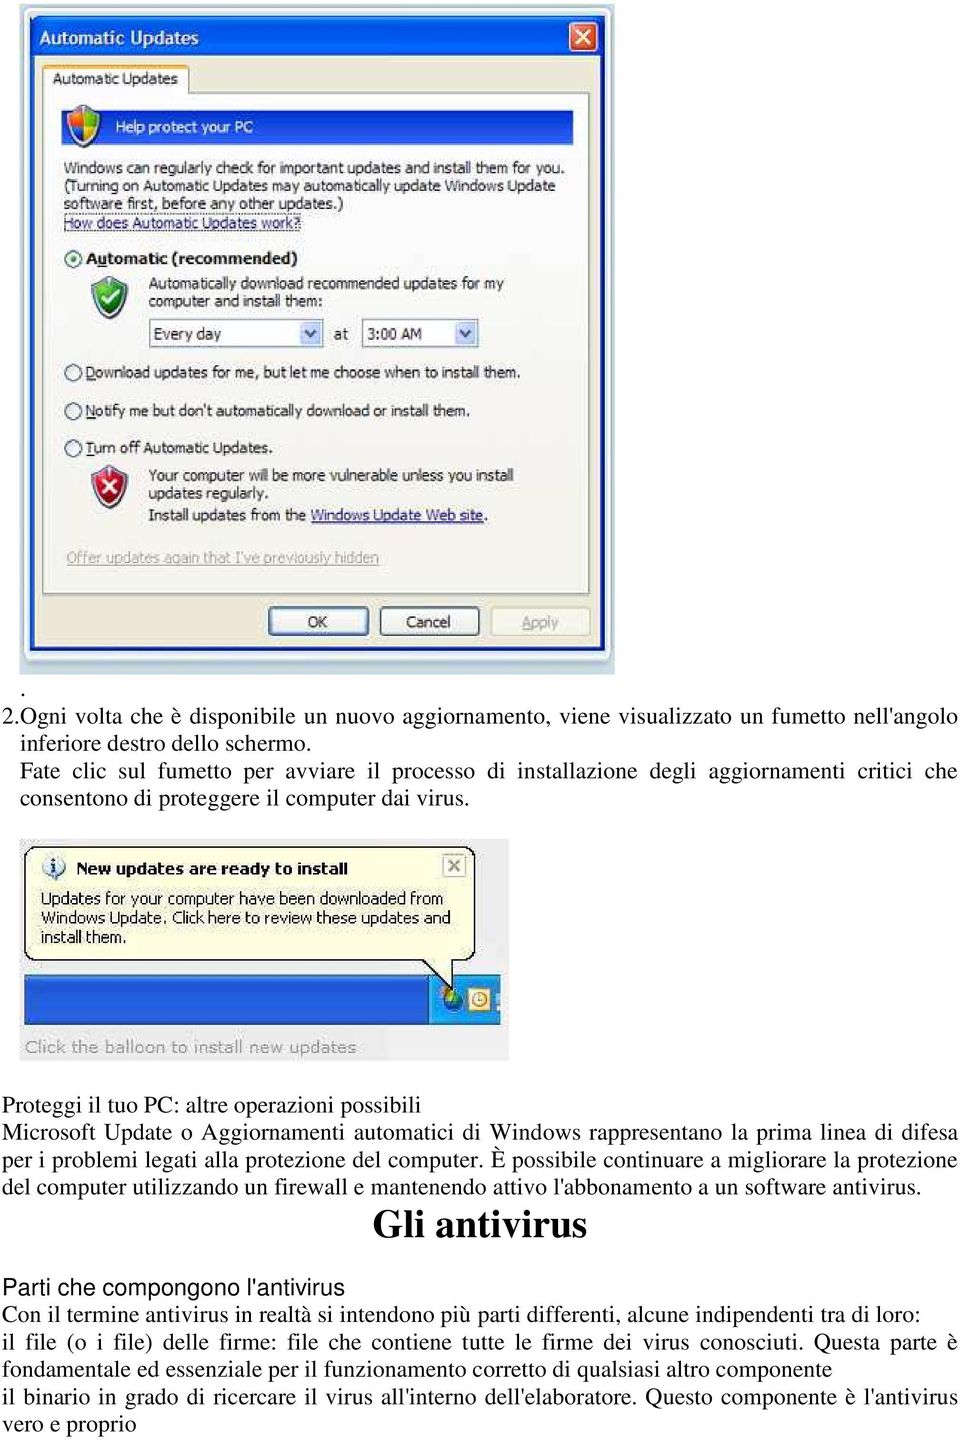 Proteggi il tuo PC: altre operazioni possibili Microsoft Update o Aggiornamenti automatici di Windows rappresentano la prima linea di difesa per i problemi legati alla protezione del computer.